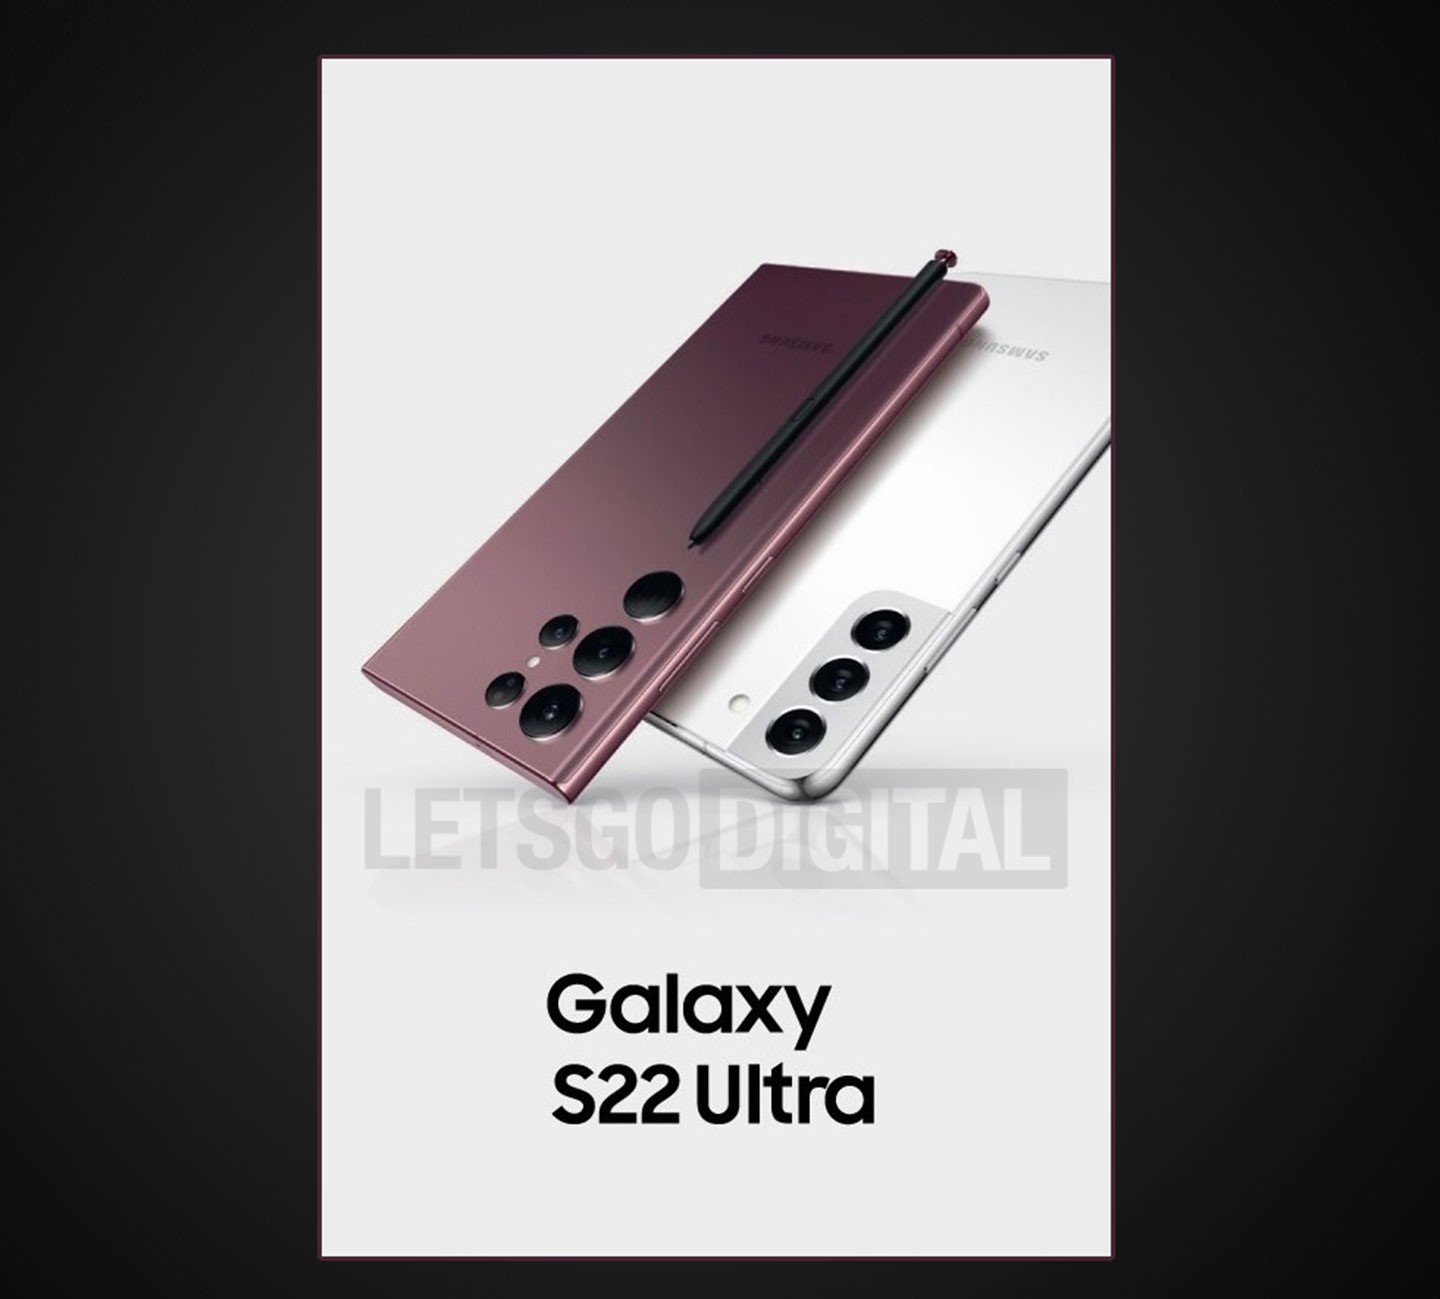 荷知名科技媒體 LetsGoDigital 宣稱從獨家管道取得三星 Galaxy S22 Ultra 的官方宣傳海報，海報同樣可以看到 S Pen 的身影，而且跟 Galaxy Note 20 Ultra 的內建式 S Pen 造型相同。